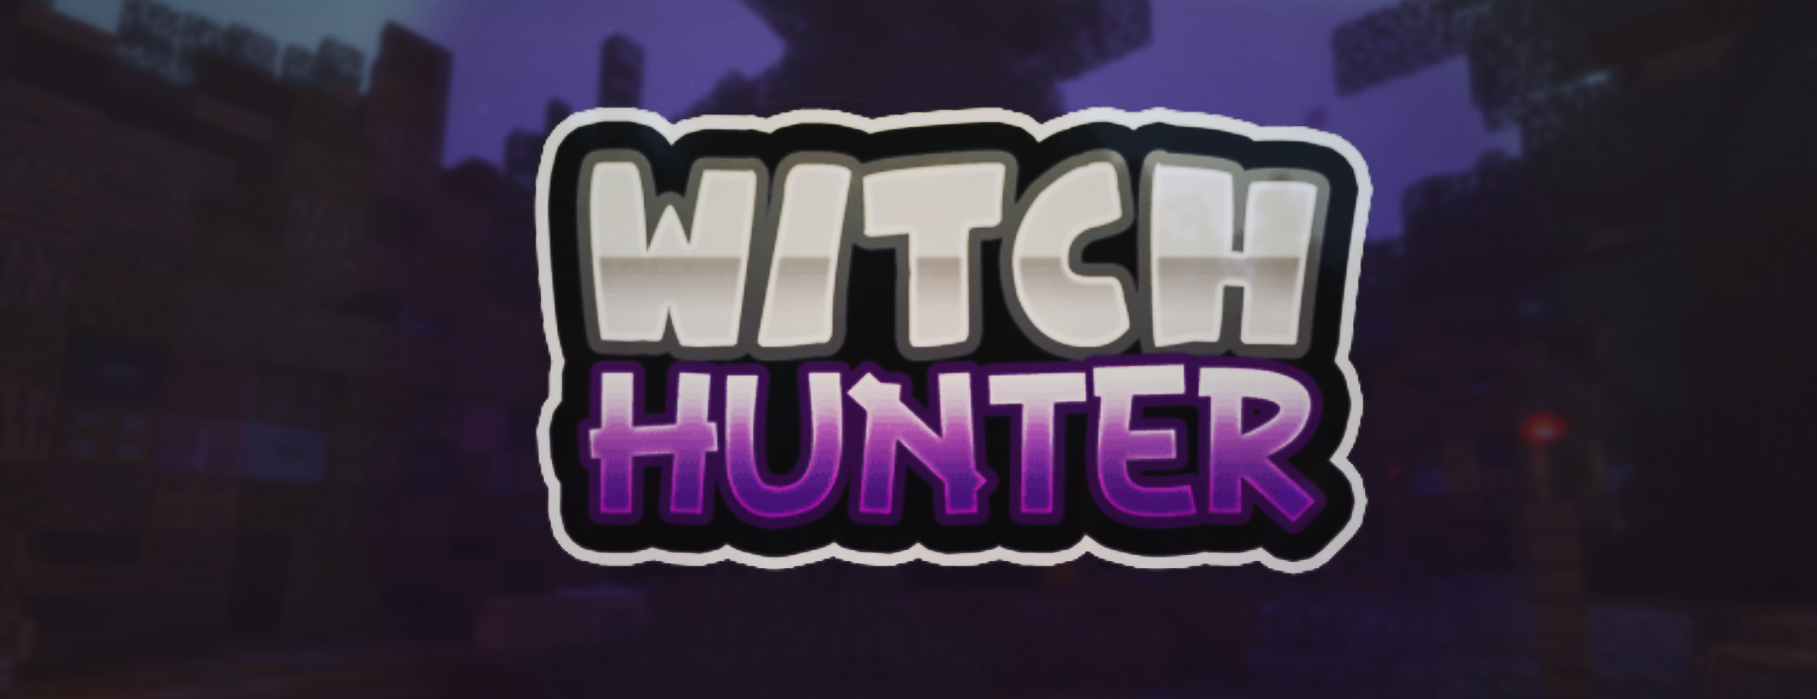 witch hunter minecraft